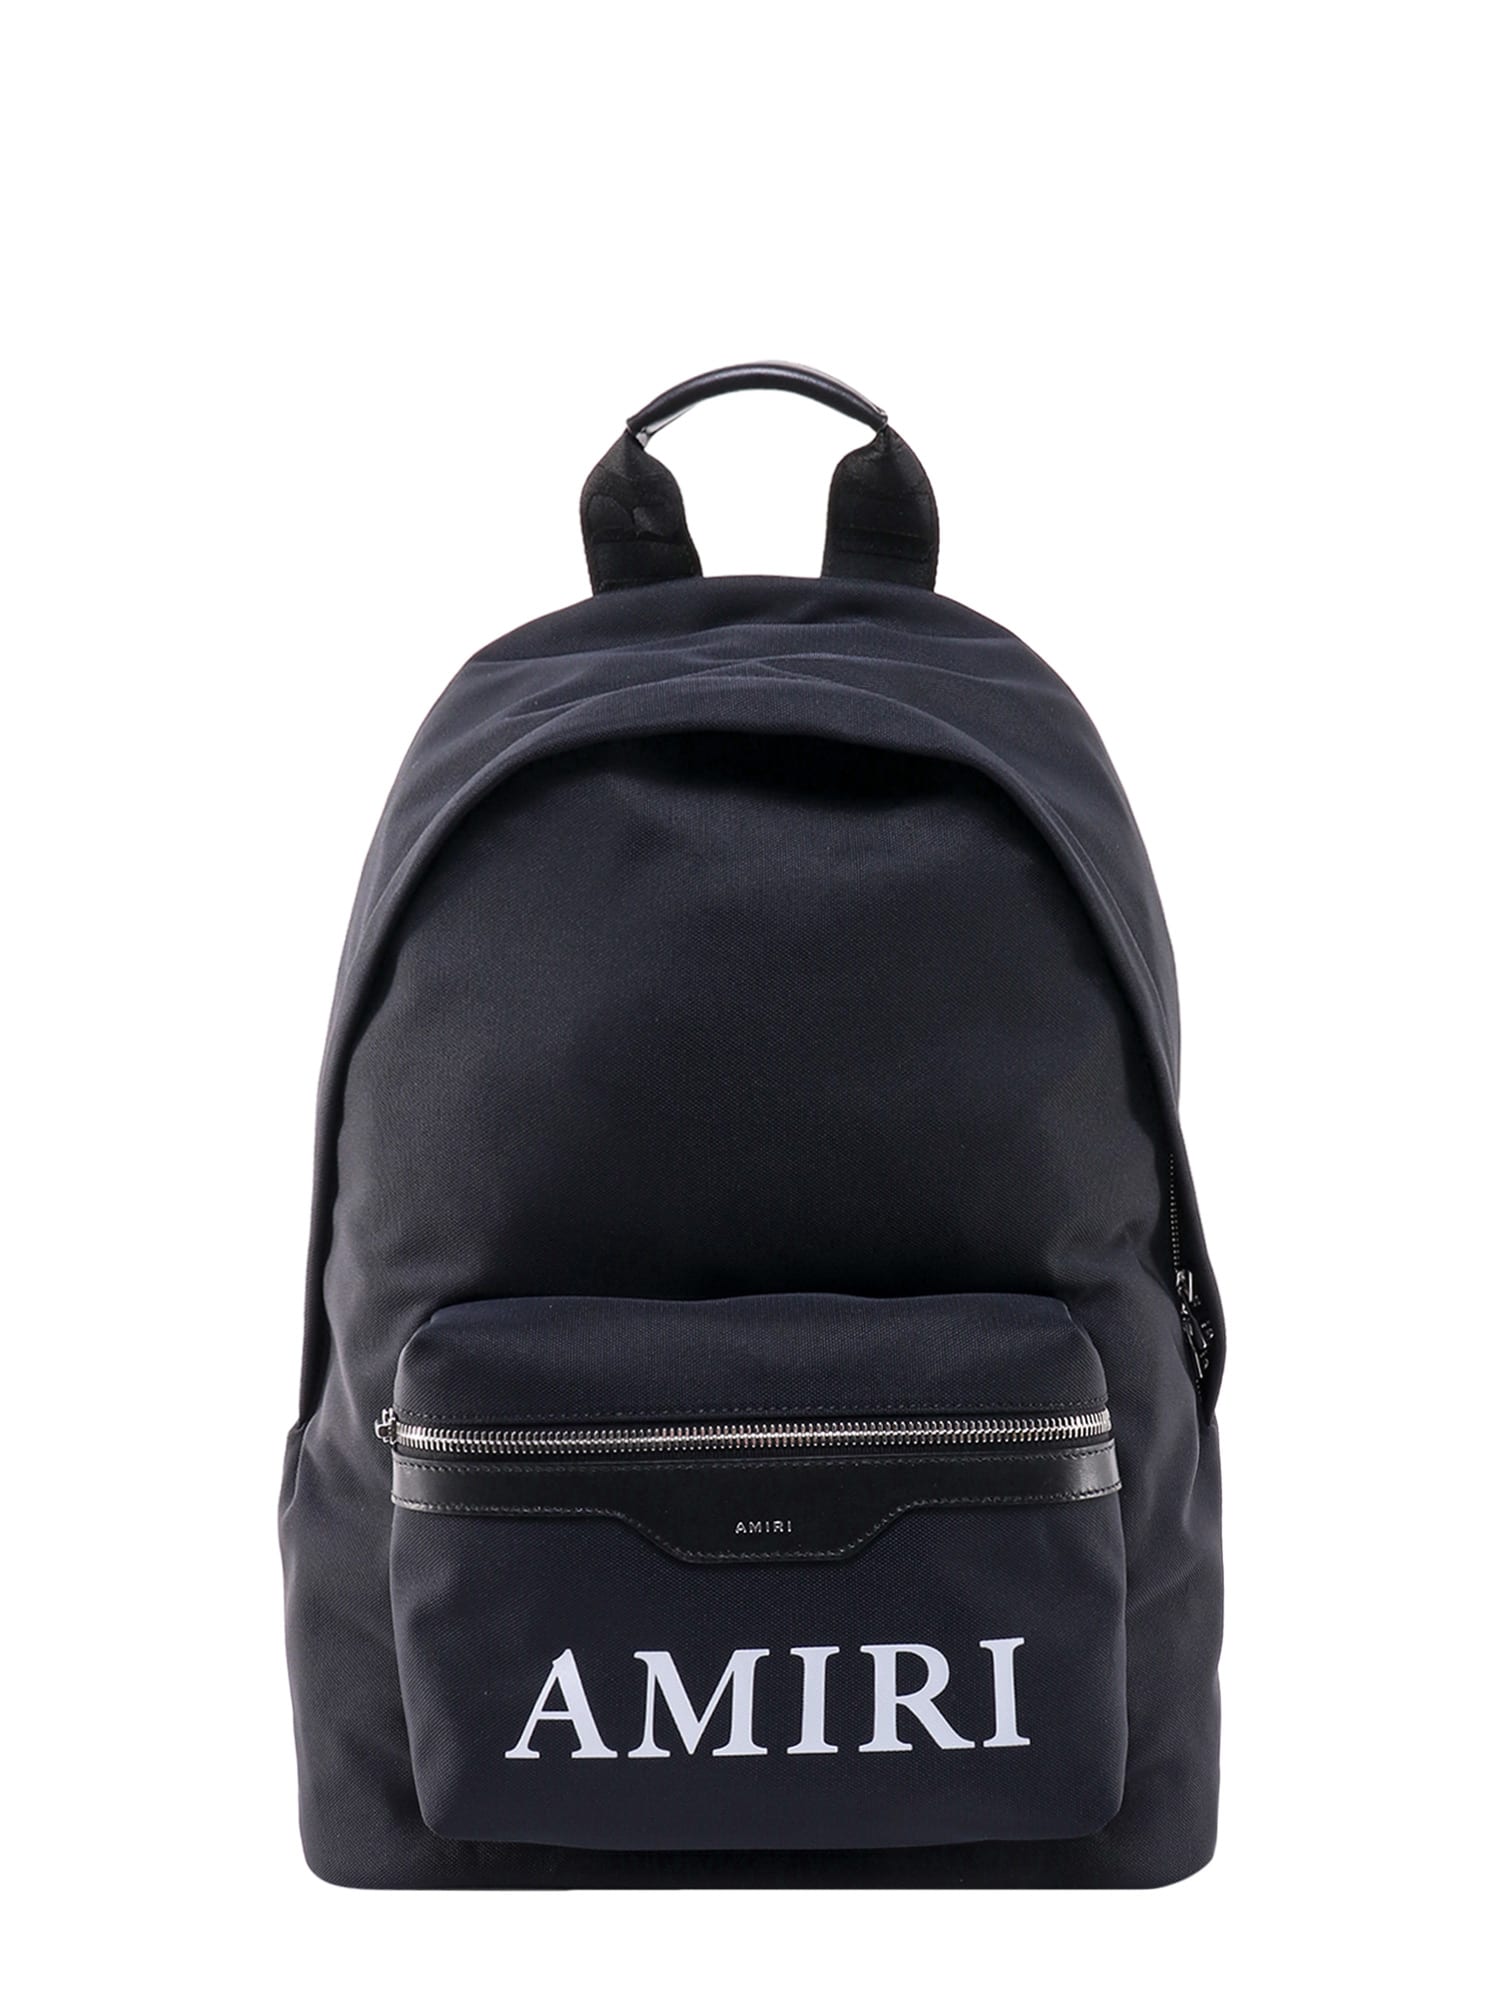 AMIRI Backpack